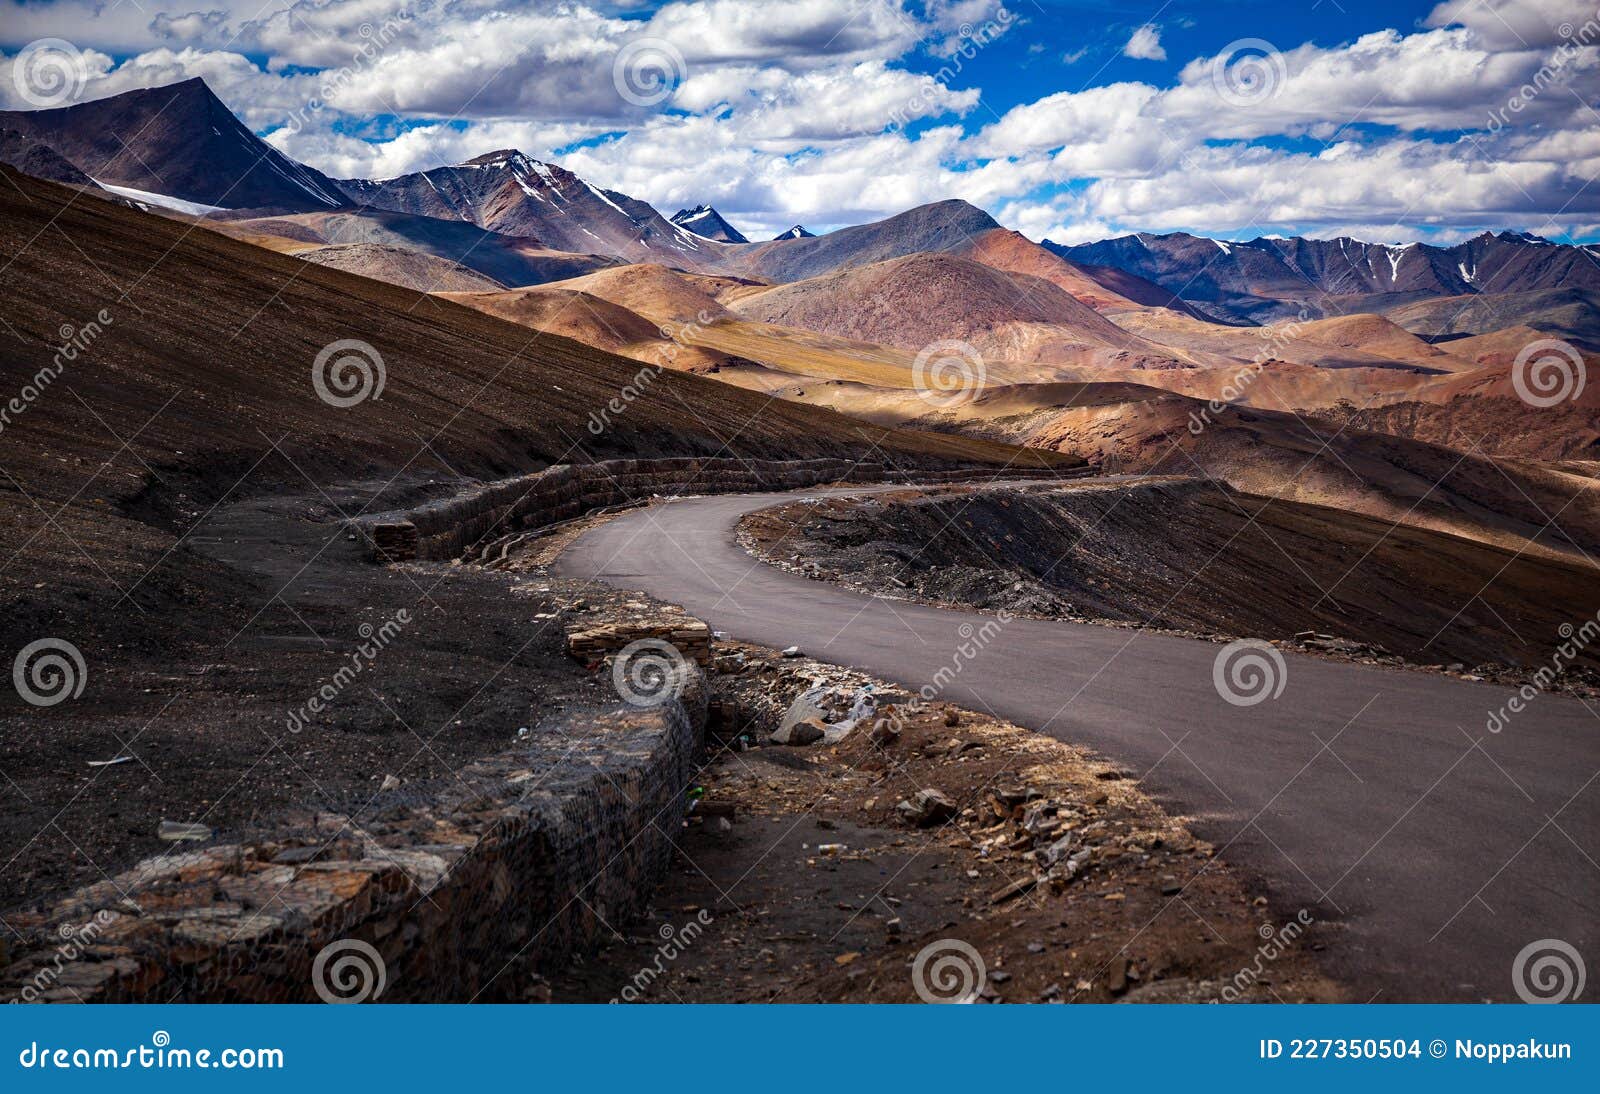 Ladakh Photography Tour 2023